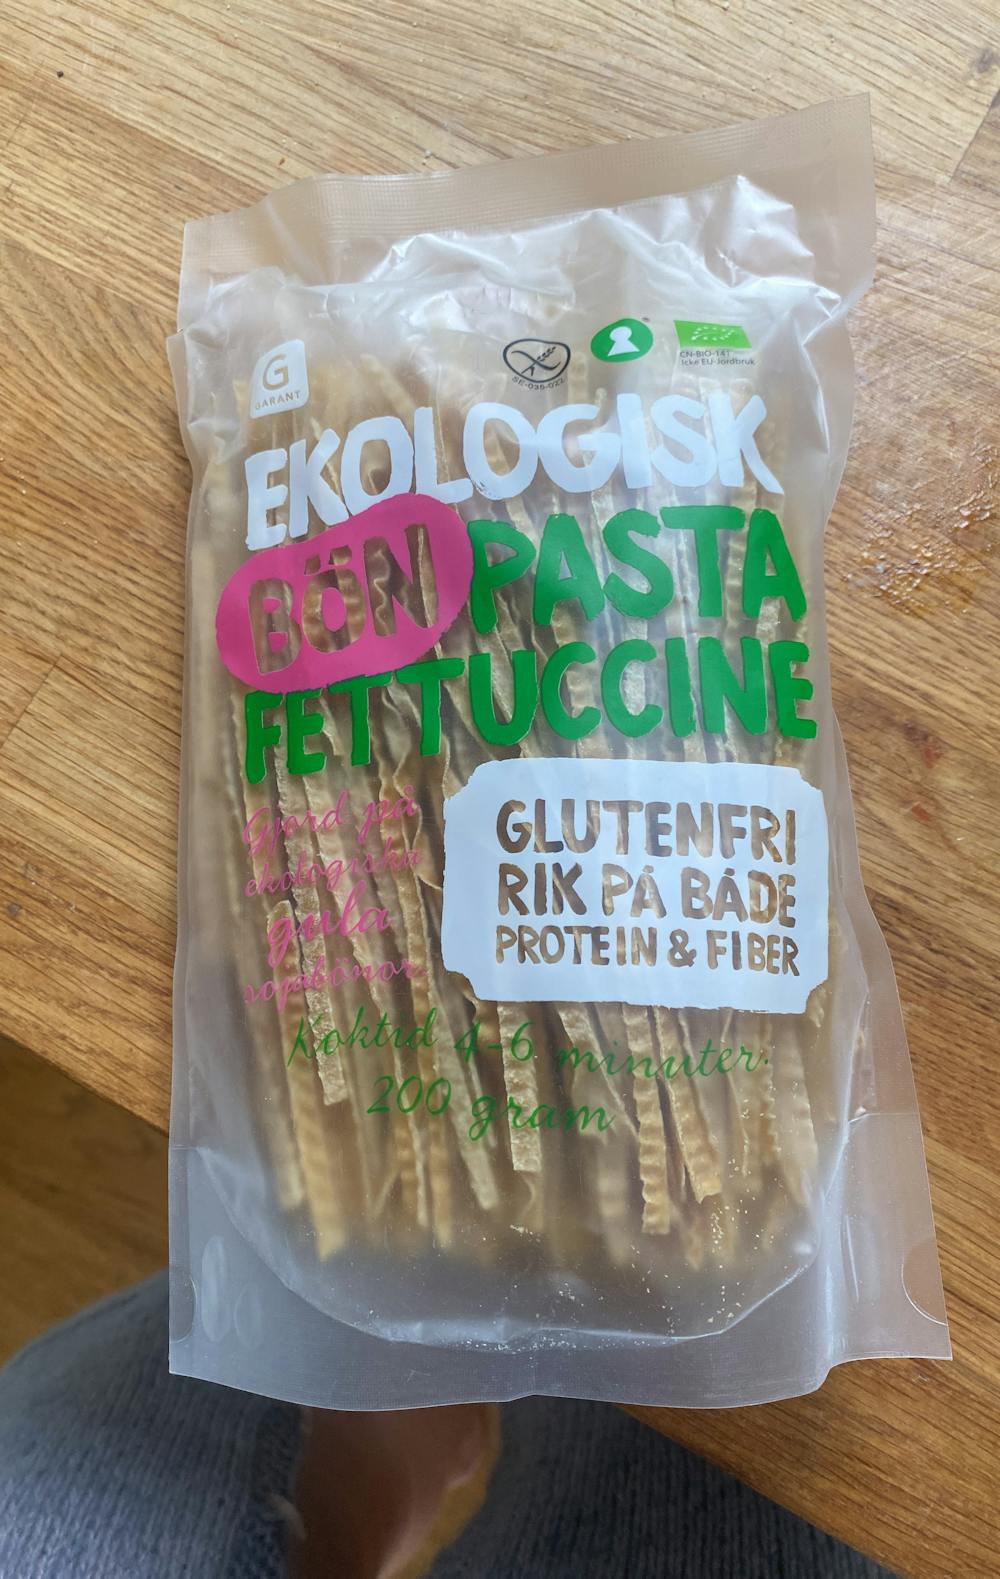 Ekologisk bön pasta fettuccine, Garant